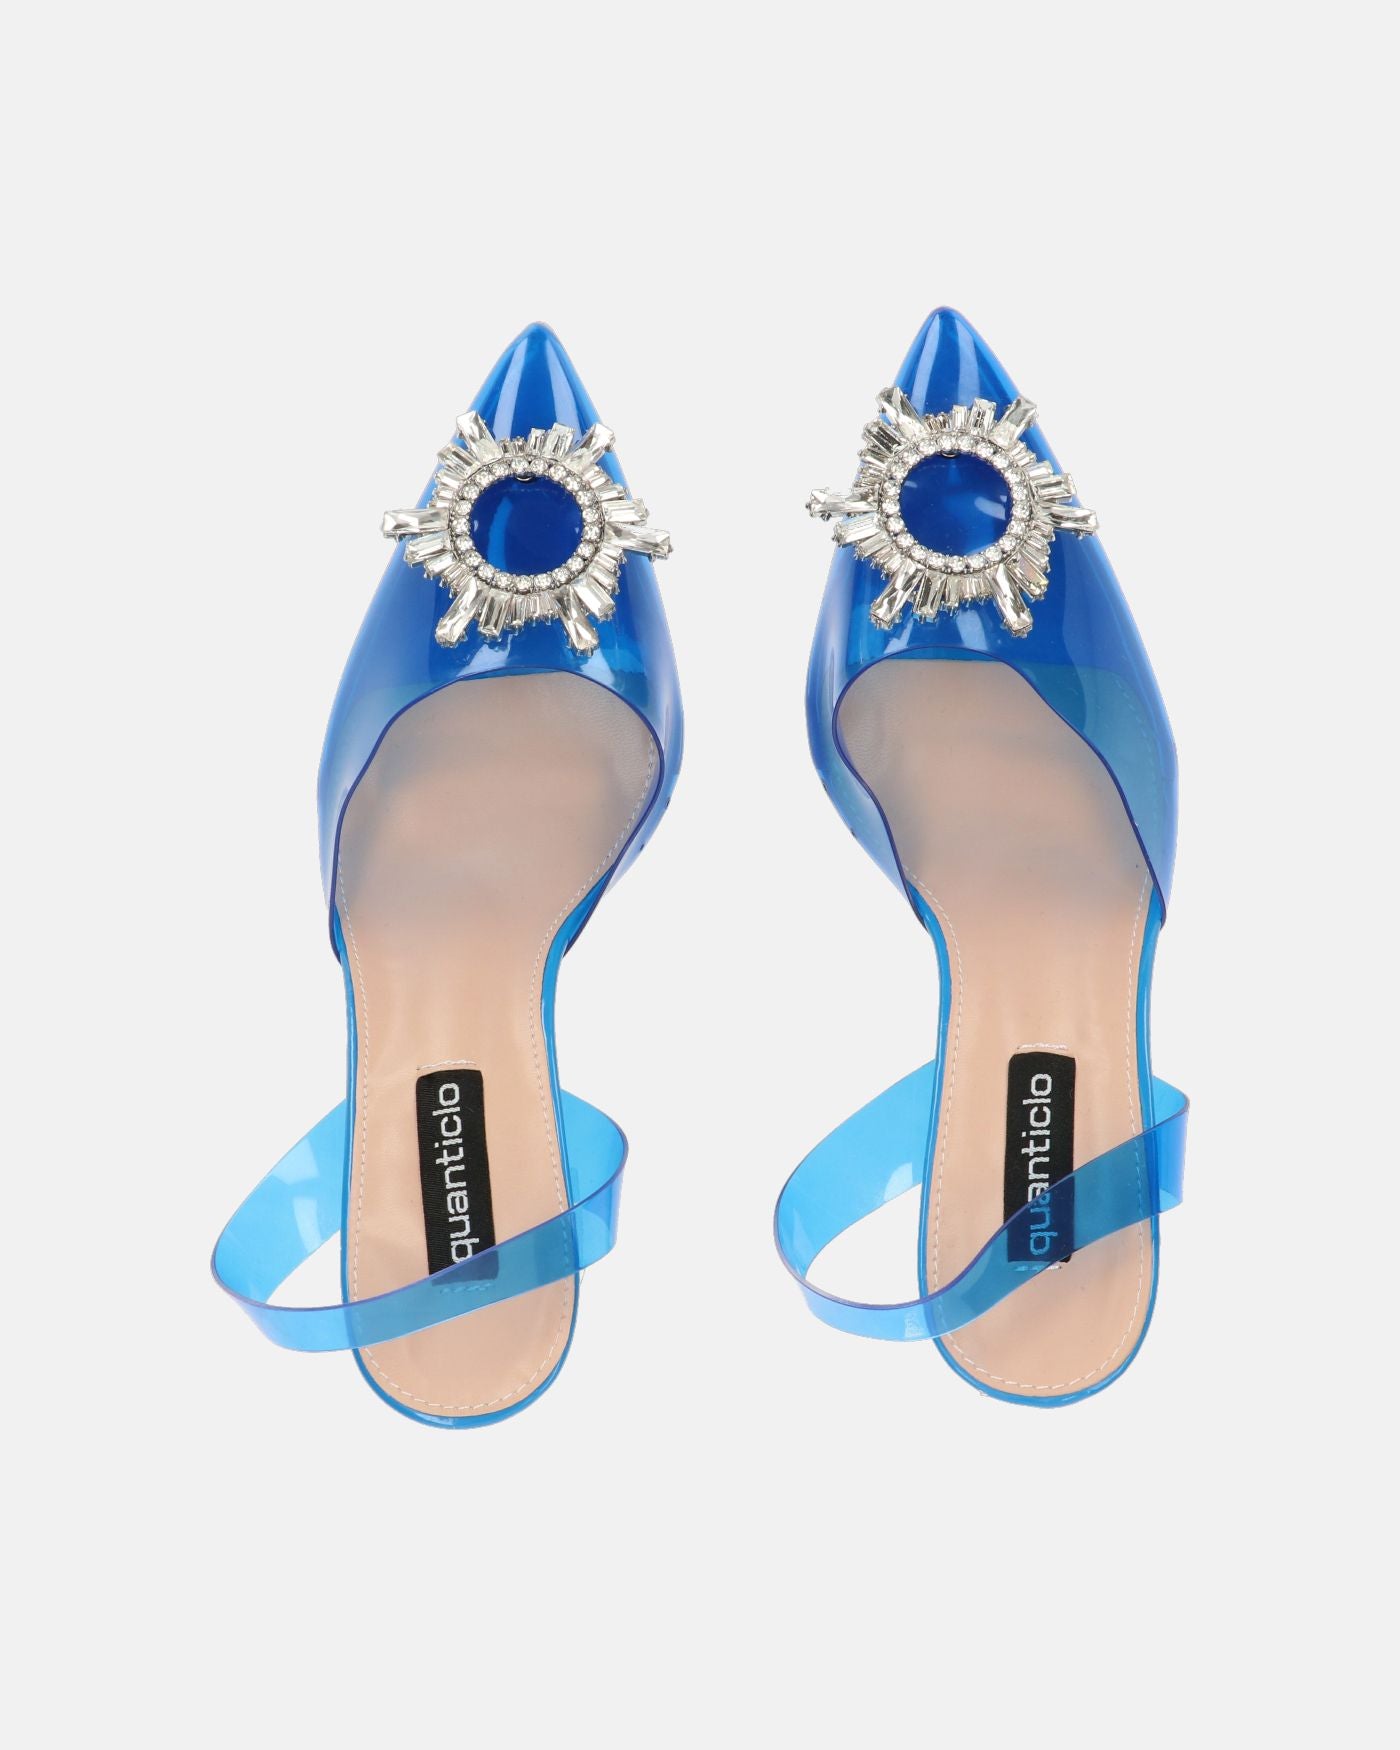 KENAN - scarpe in perspex blu con decorazione di gemme in punta